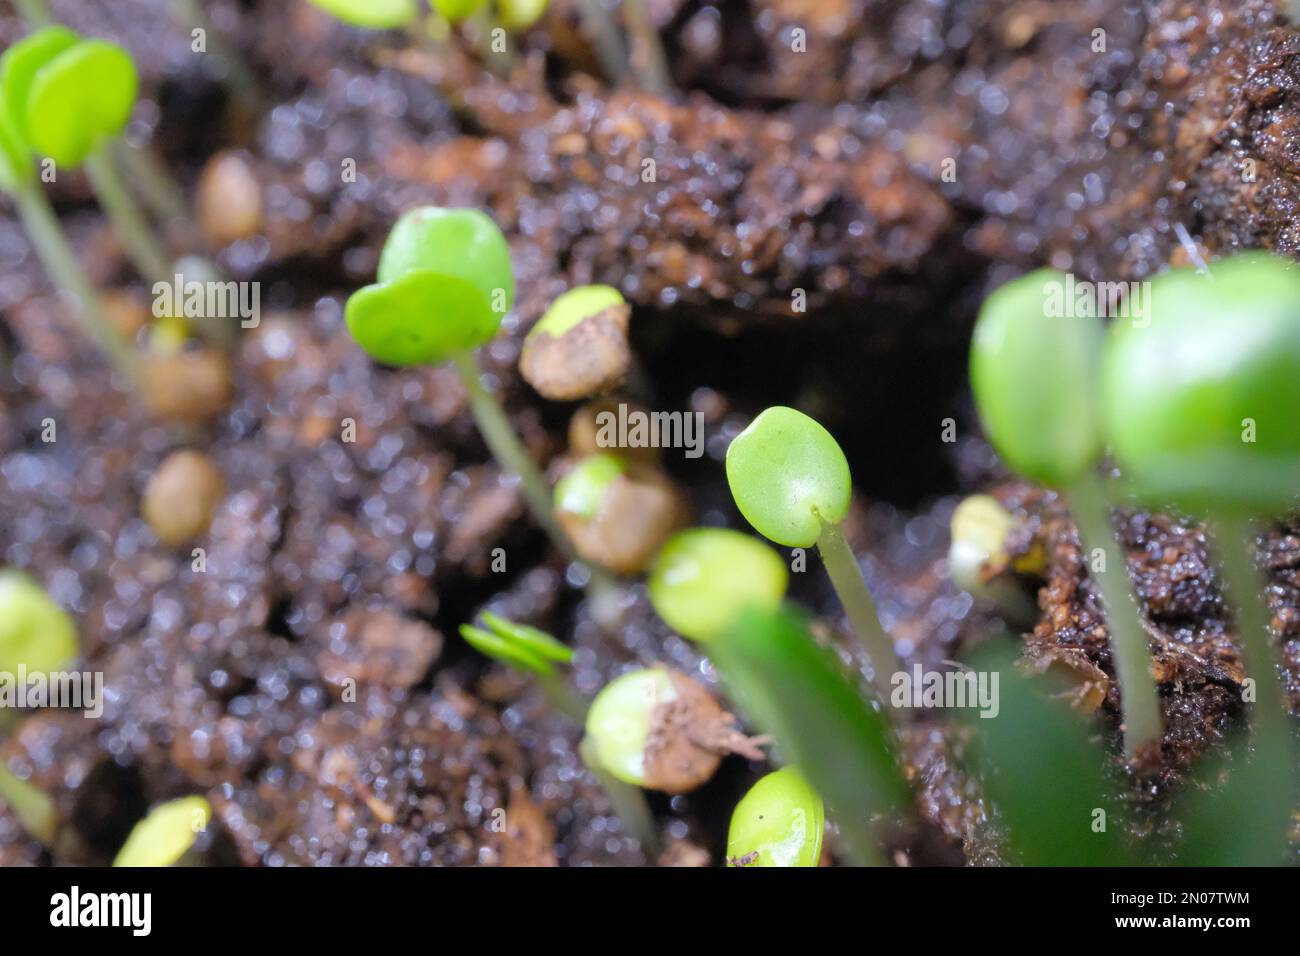 Germinados Mimosa creciendo Foto de stock